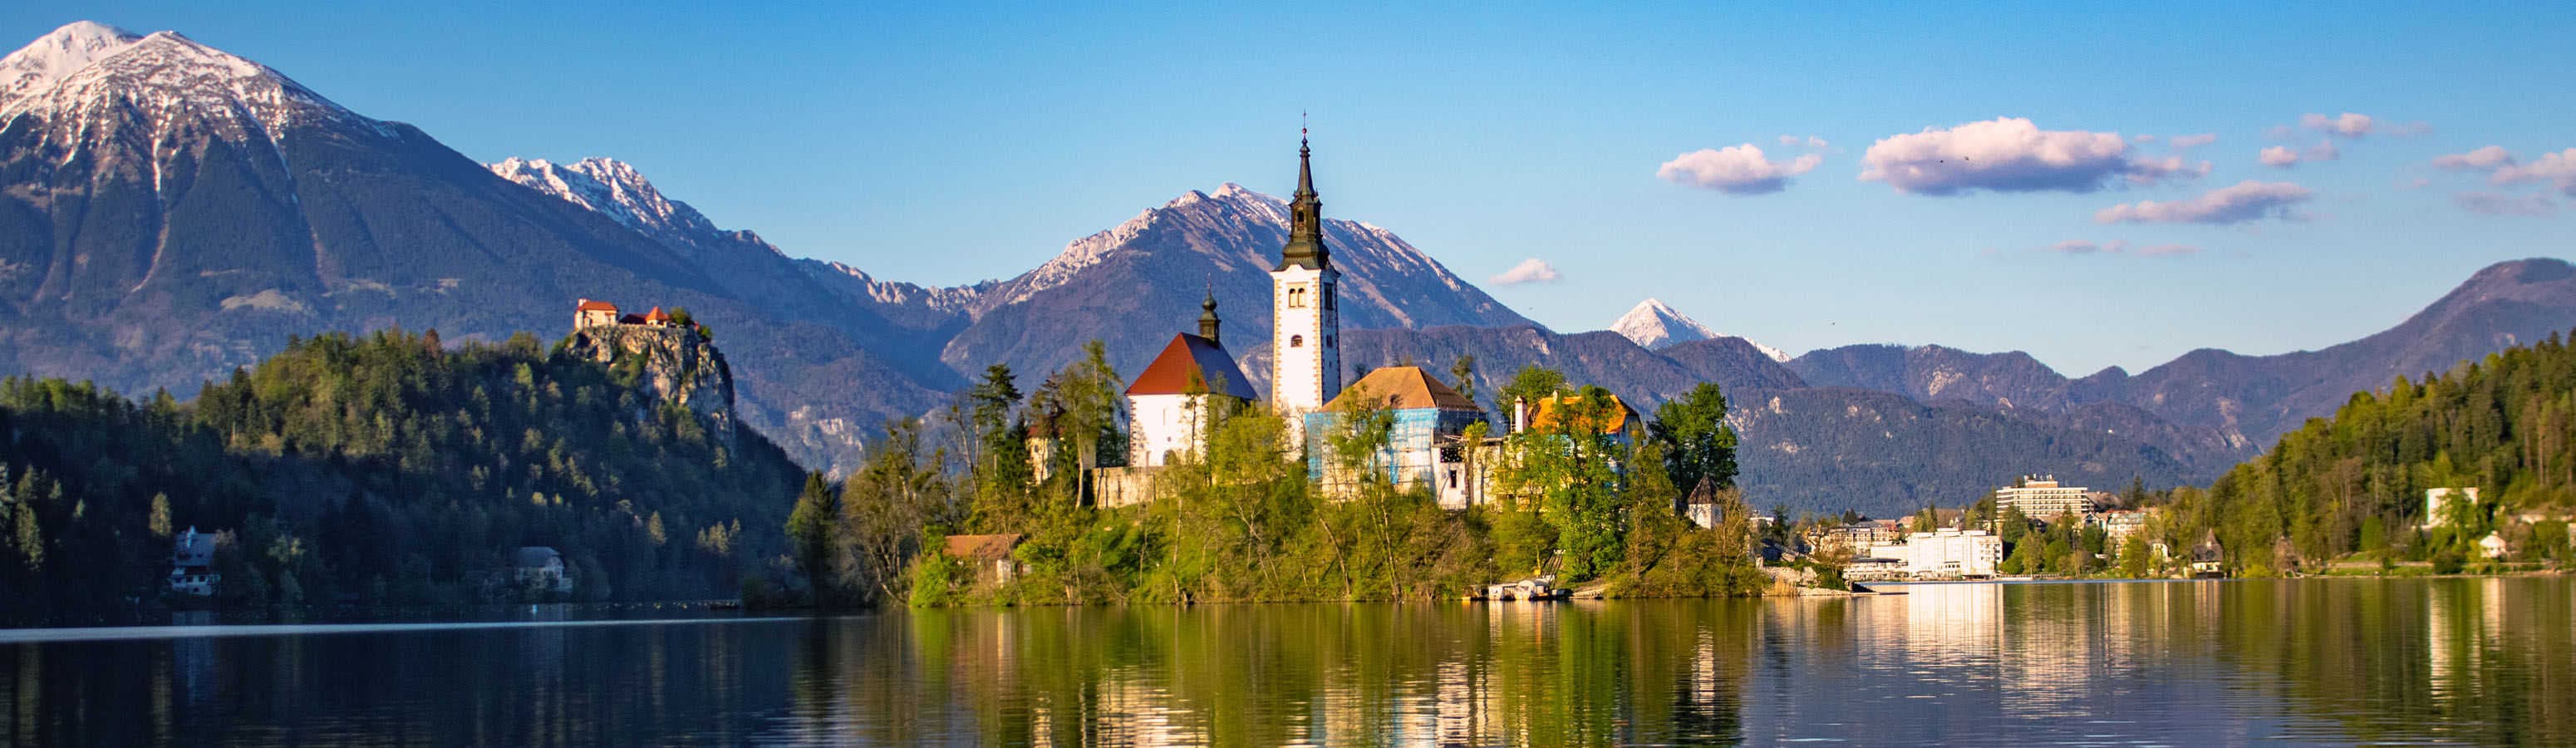 La Slovenia è un mare e un paesaggio incontaminato